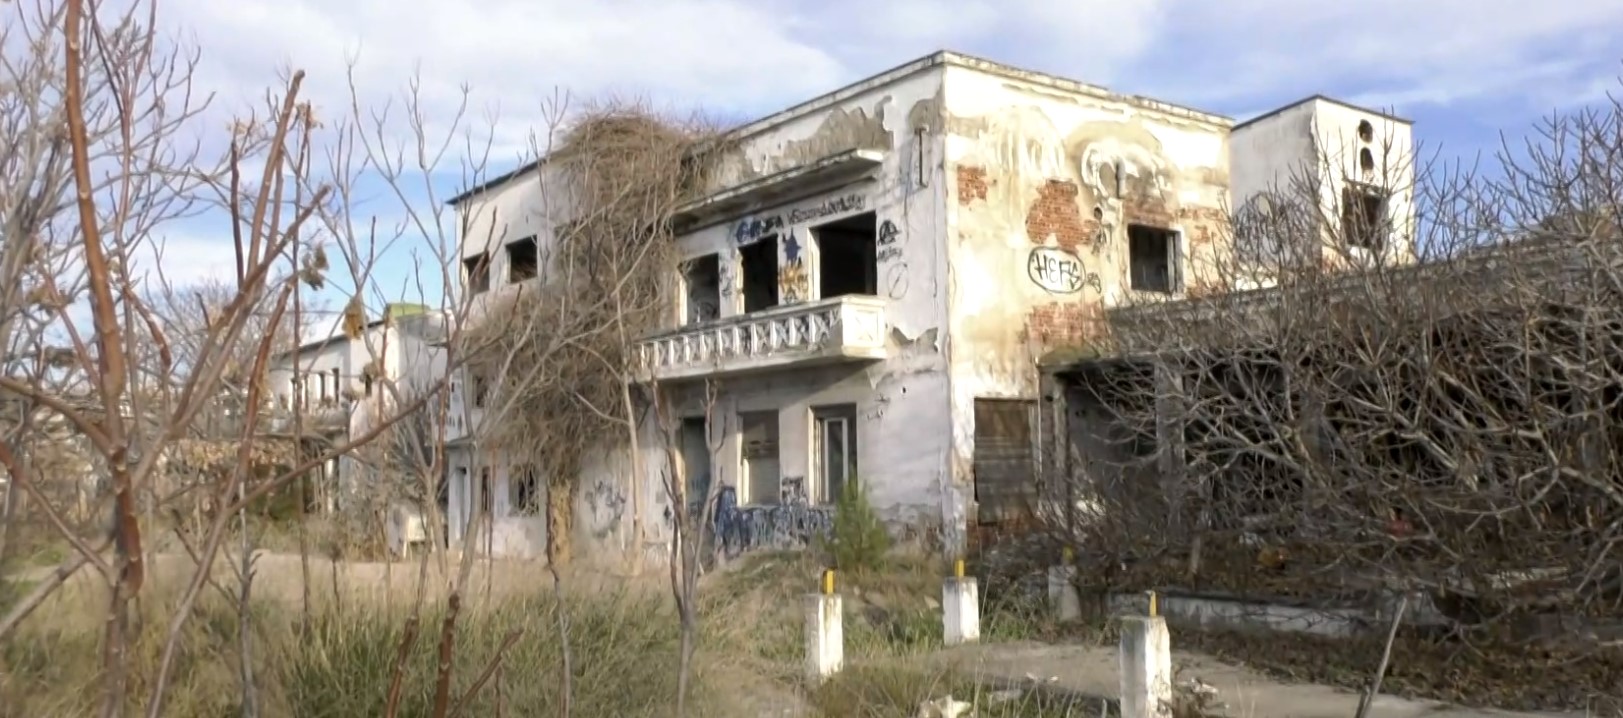 Αυτοψία της ΕΡΤ: Απέραντος σκουπιδότοπος το εγκαταλελειμμένο εργοστάσιο της ΑΓΝΟ στη Θεσσαλονίκη